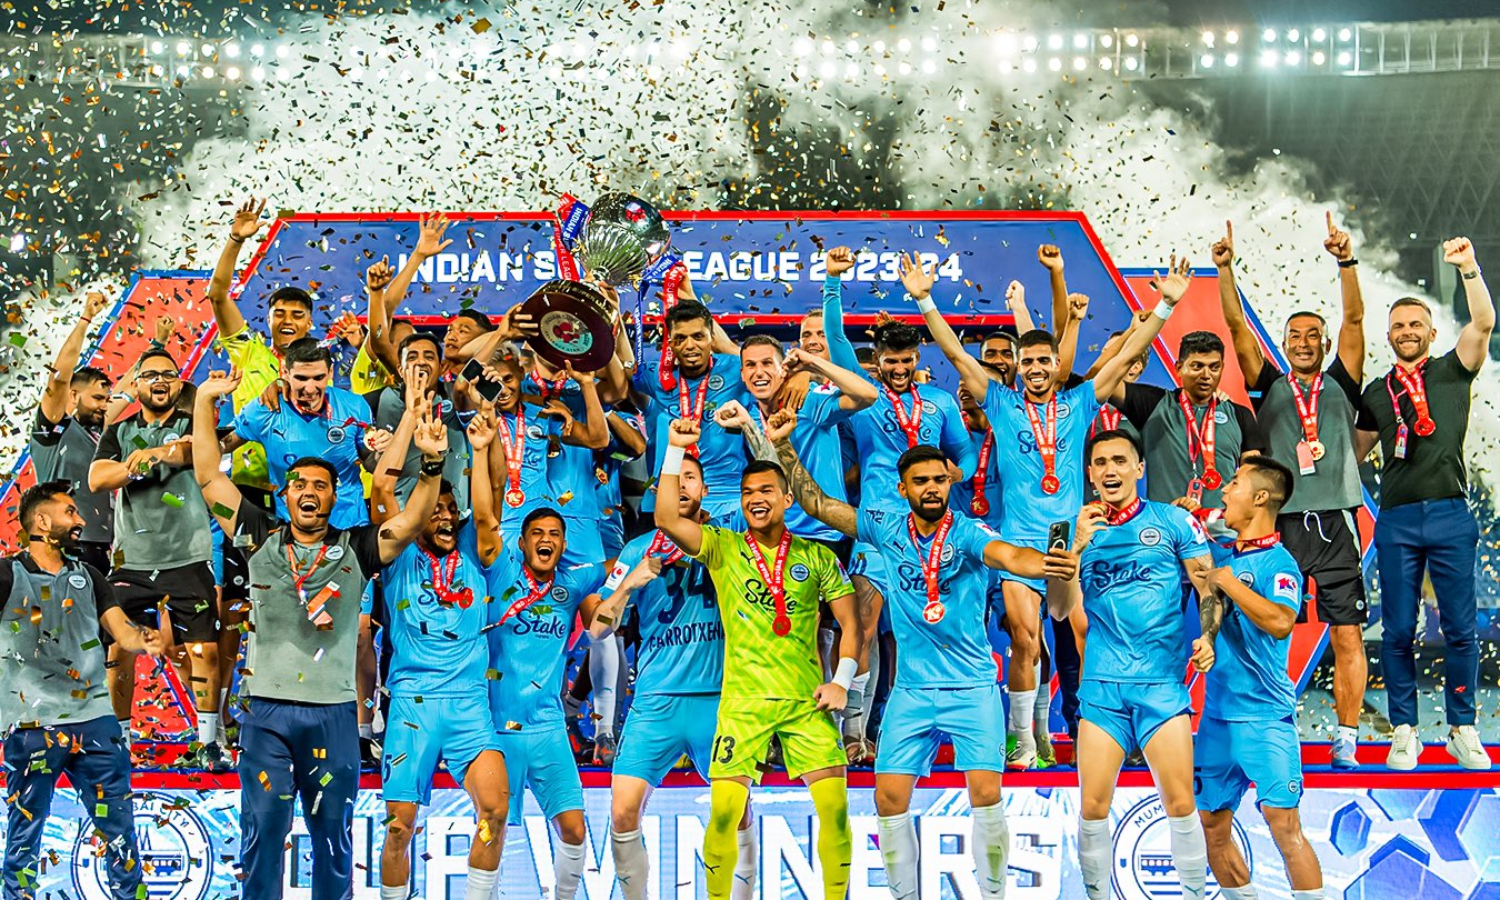 Mumbai City FC's road to victory